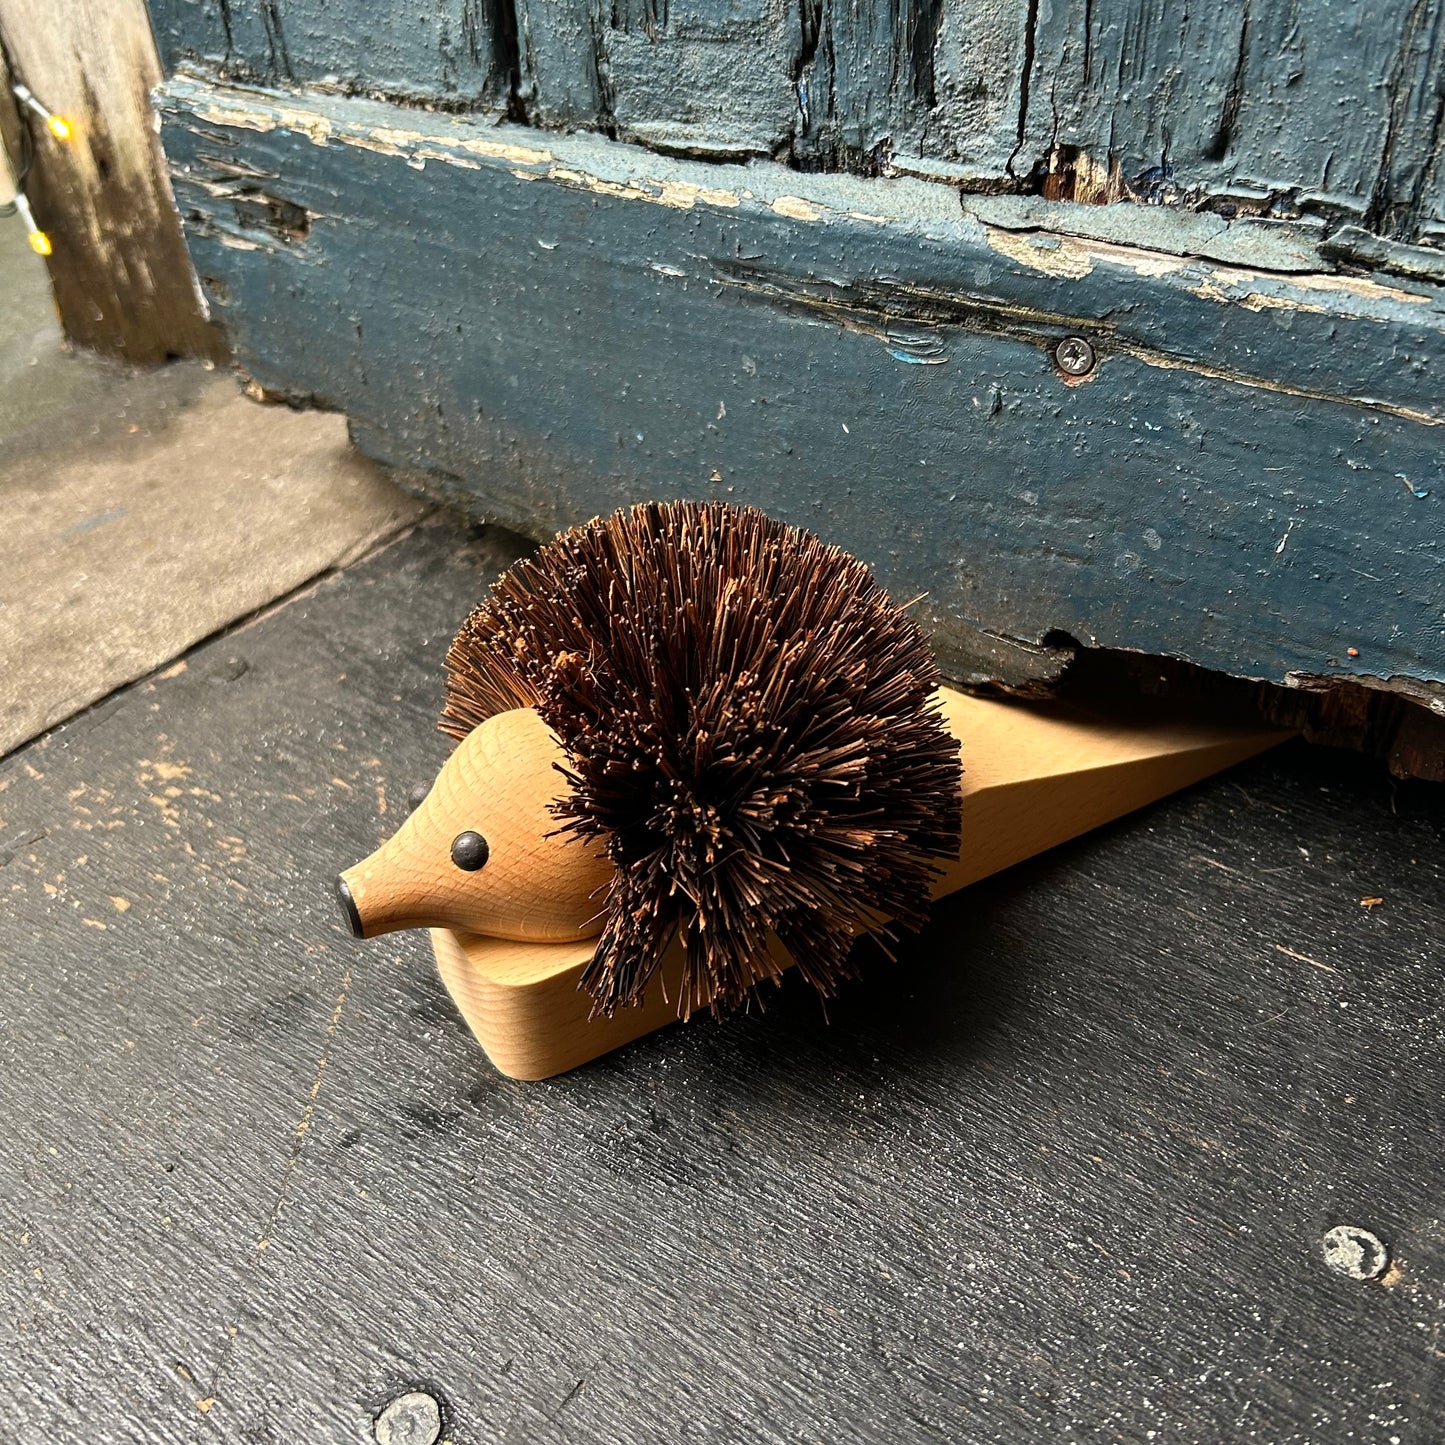 Hedgehog Door Stop